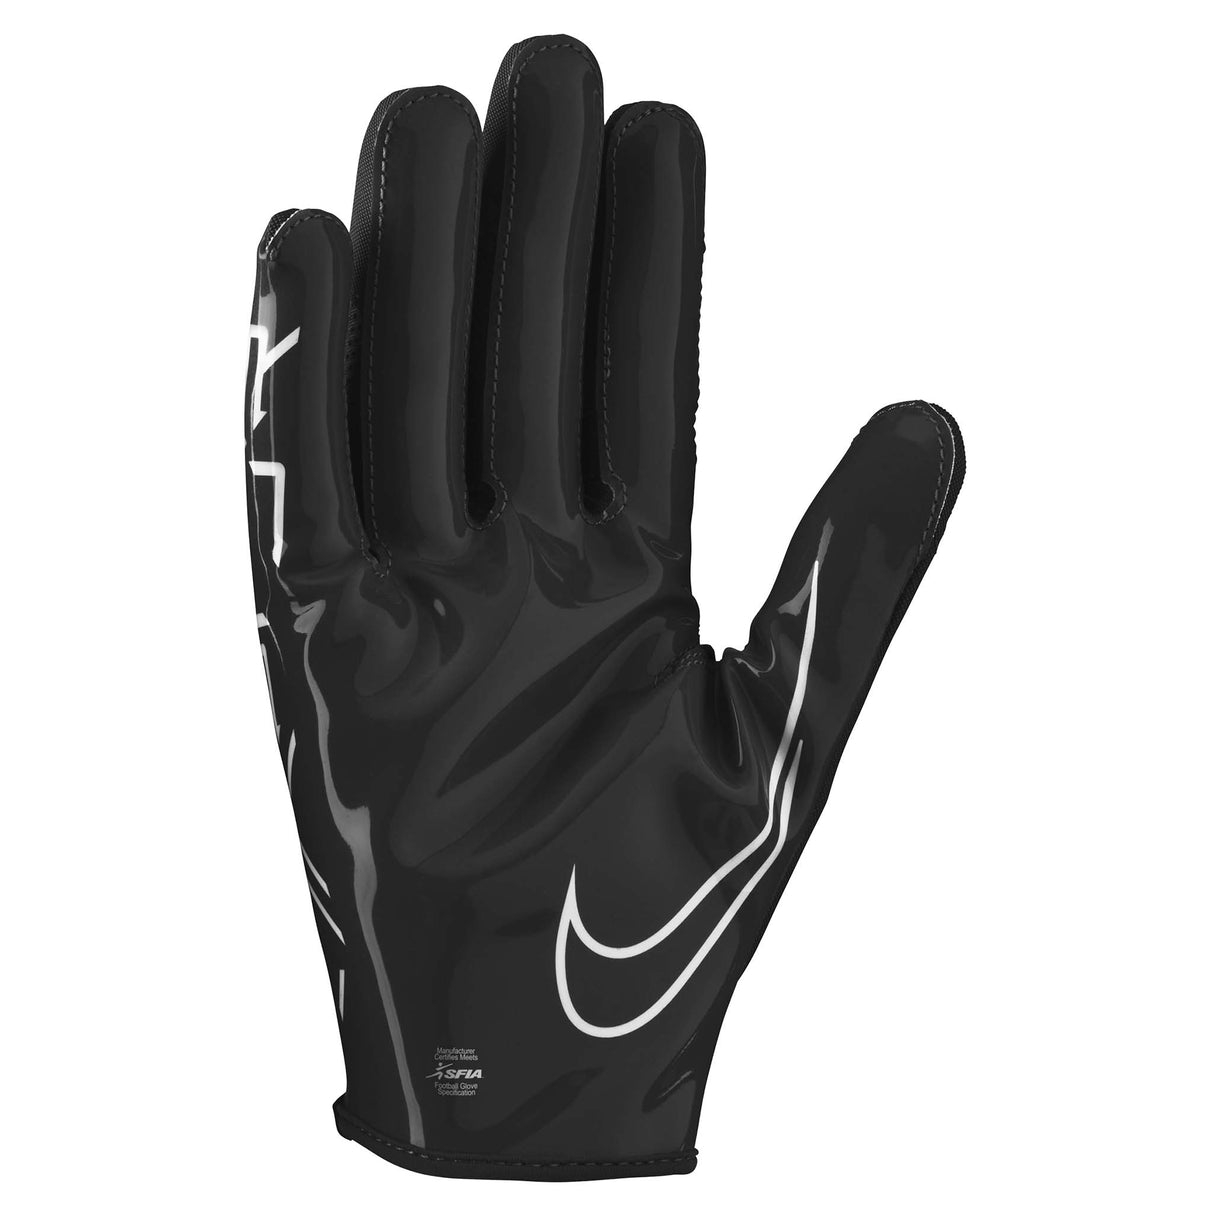 Nike Vapor Jet 7.0 FG gants de football américain pour adultes paume noir blanc